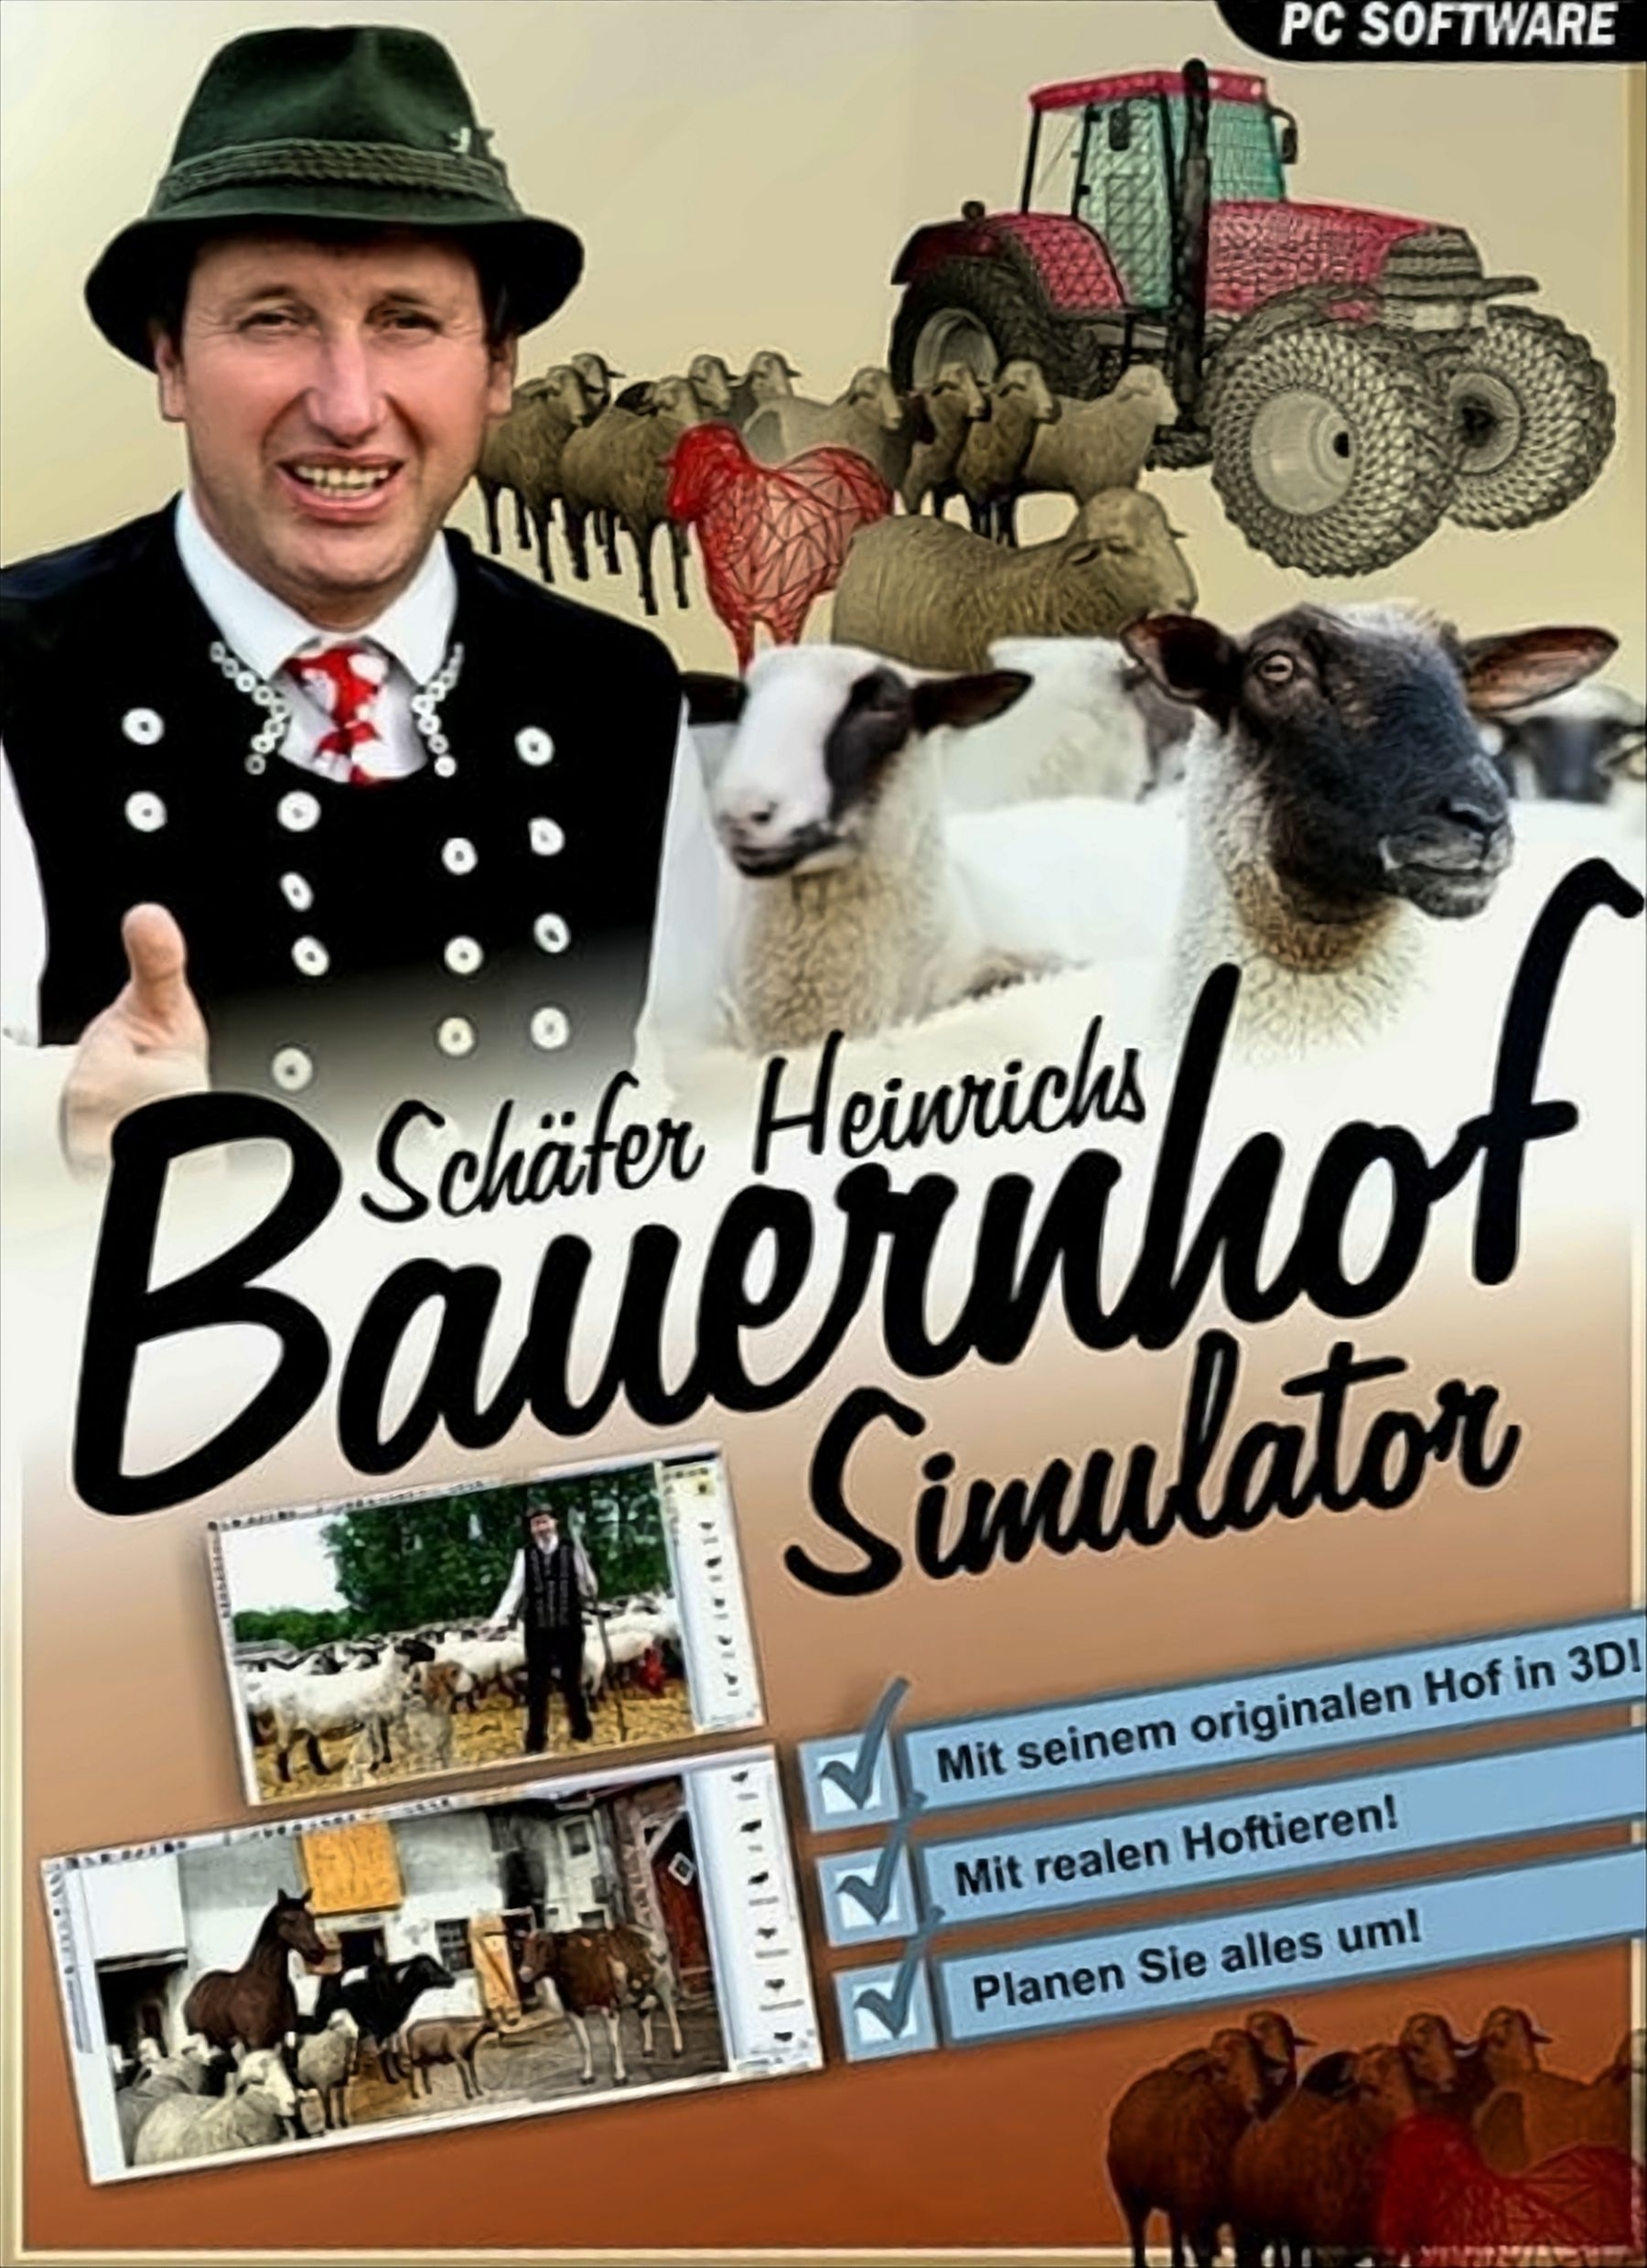 Bauernhof Schäfer Simulator [PC] - Heinrichs